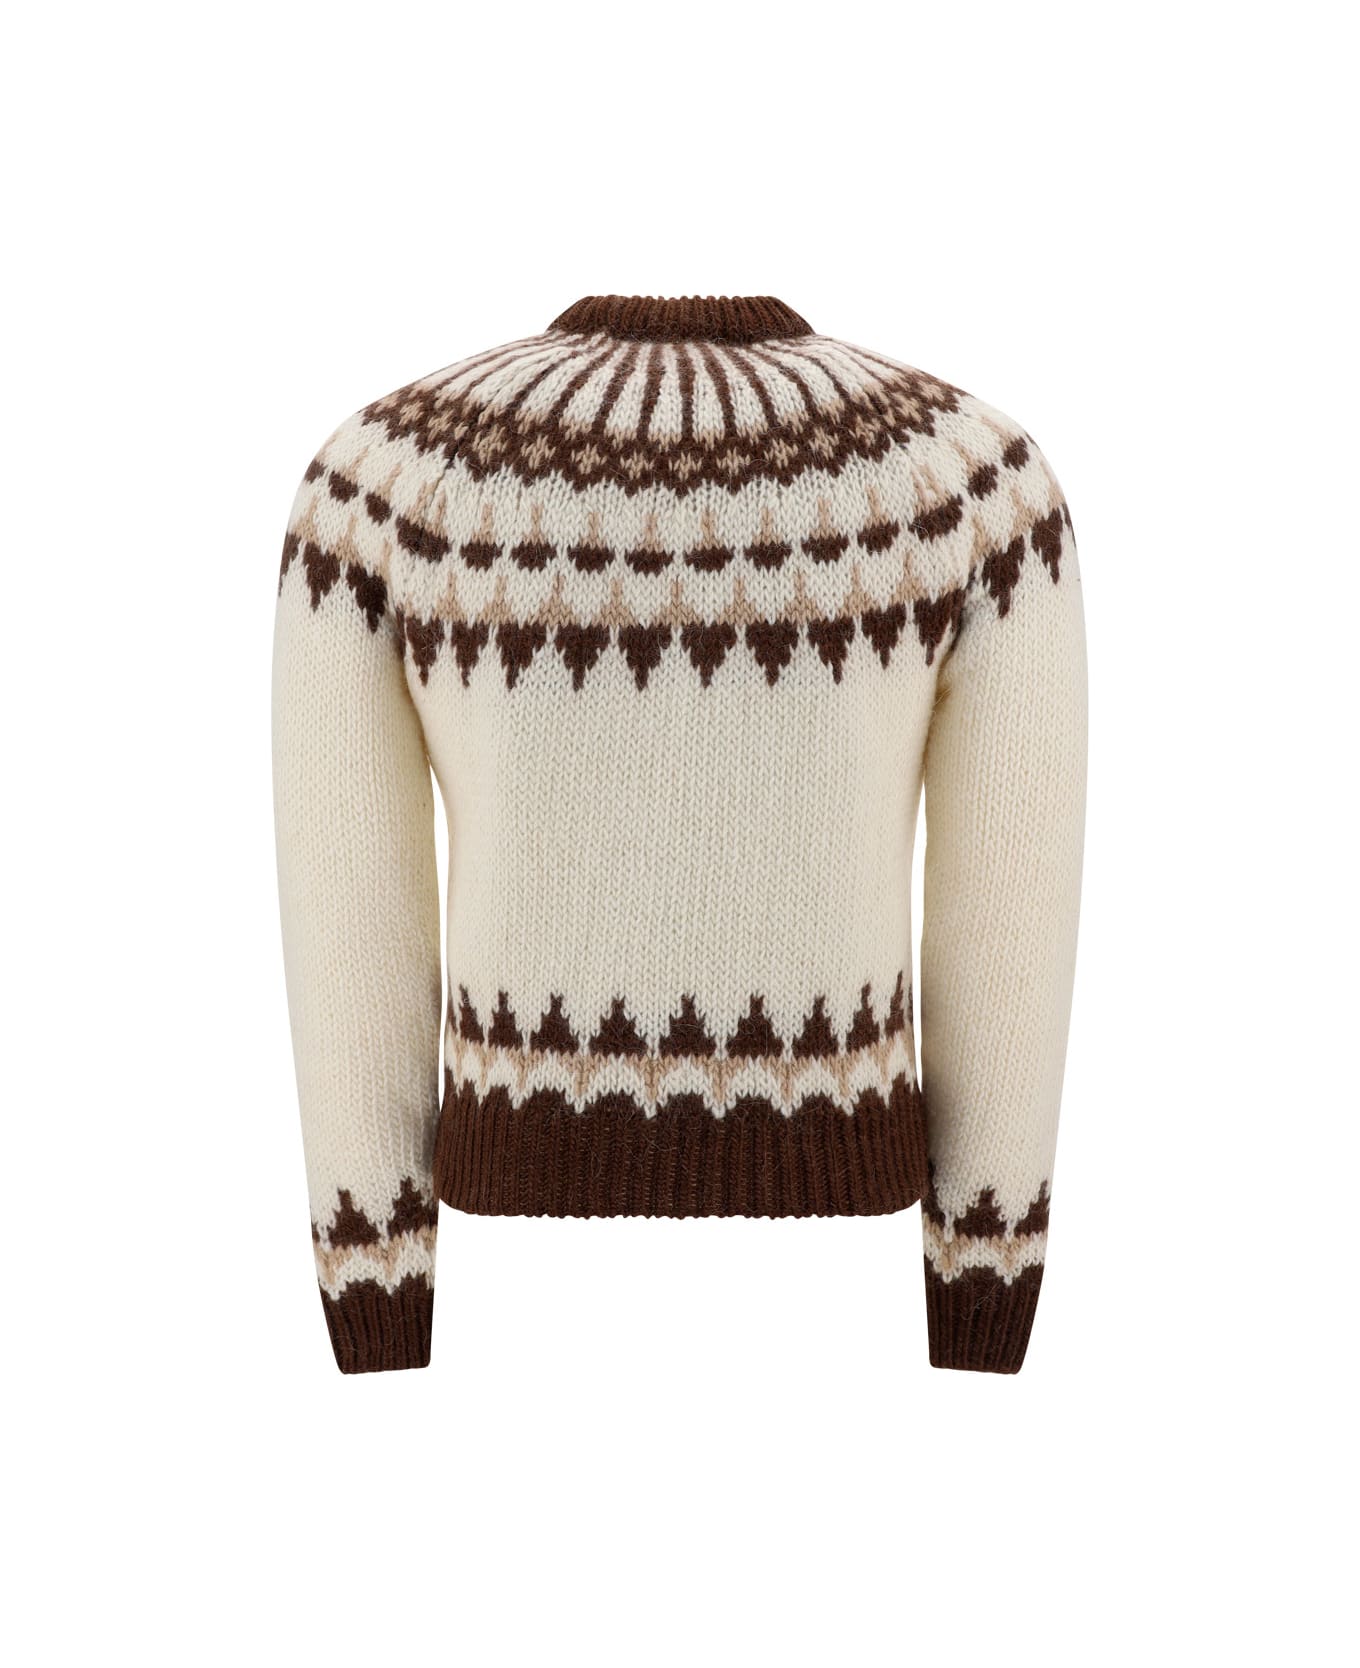 Saint Laurent Sweater - Naturel/marron/beige